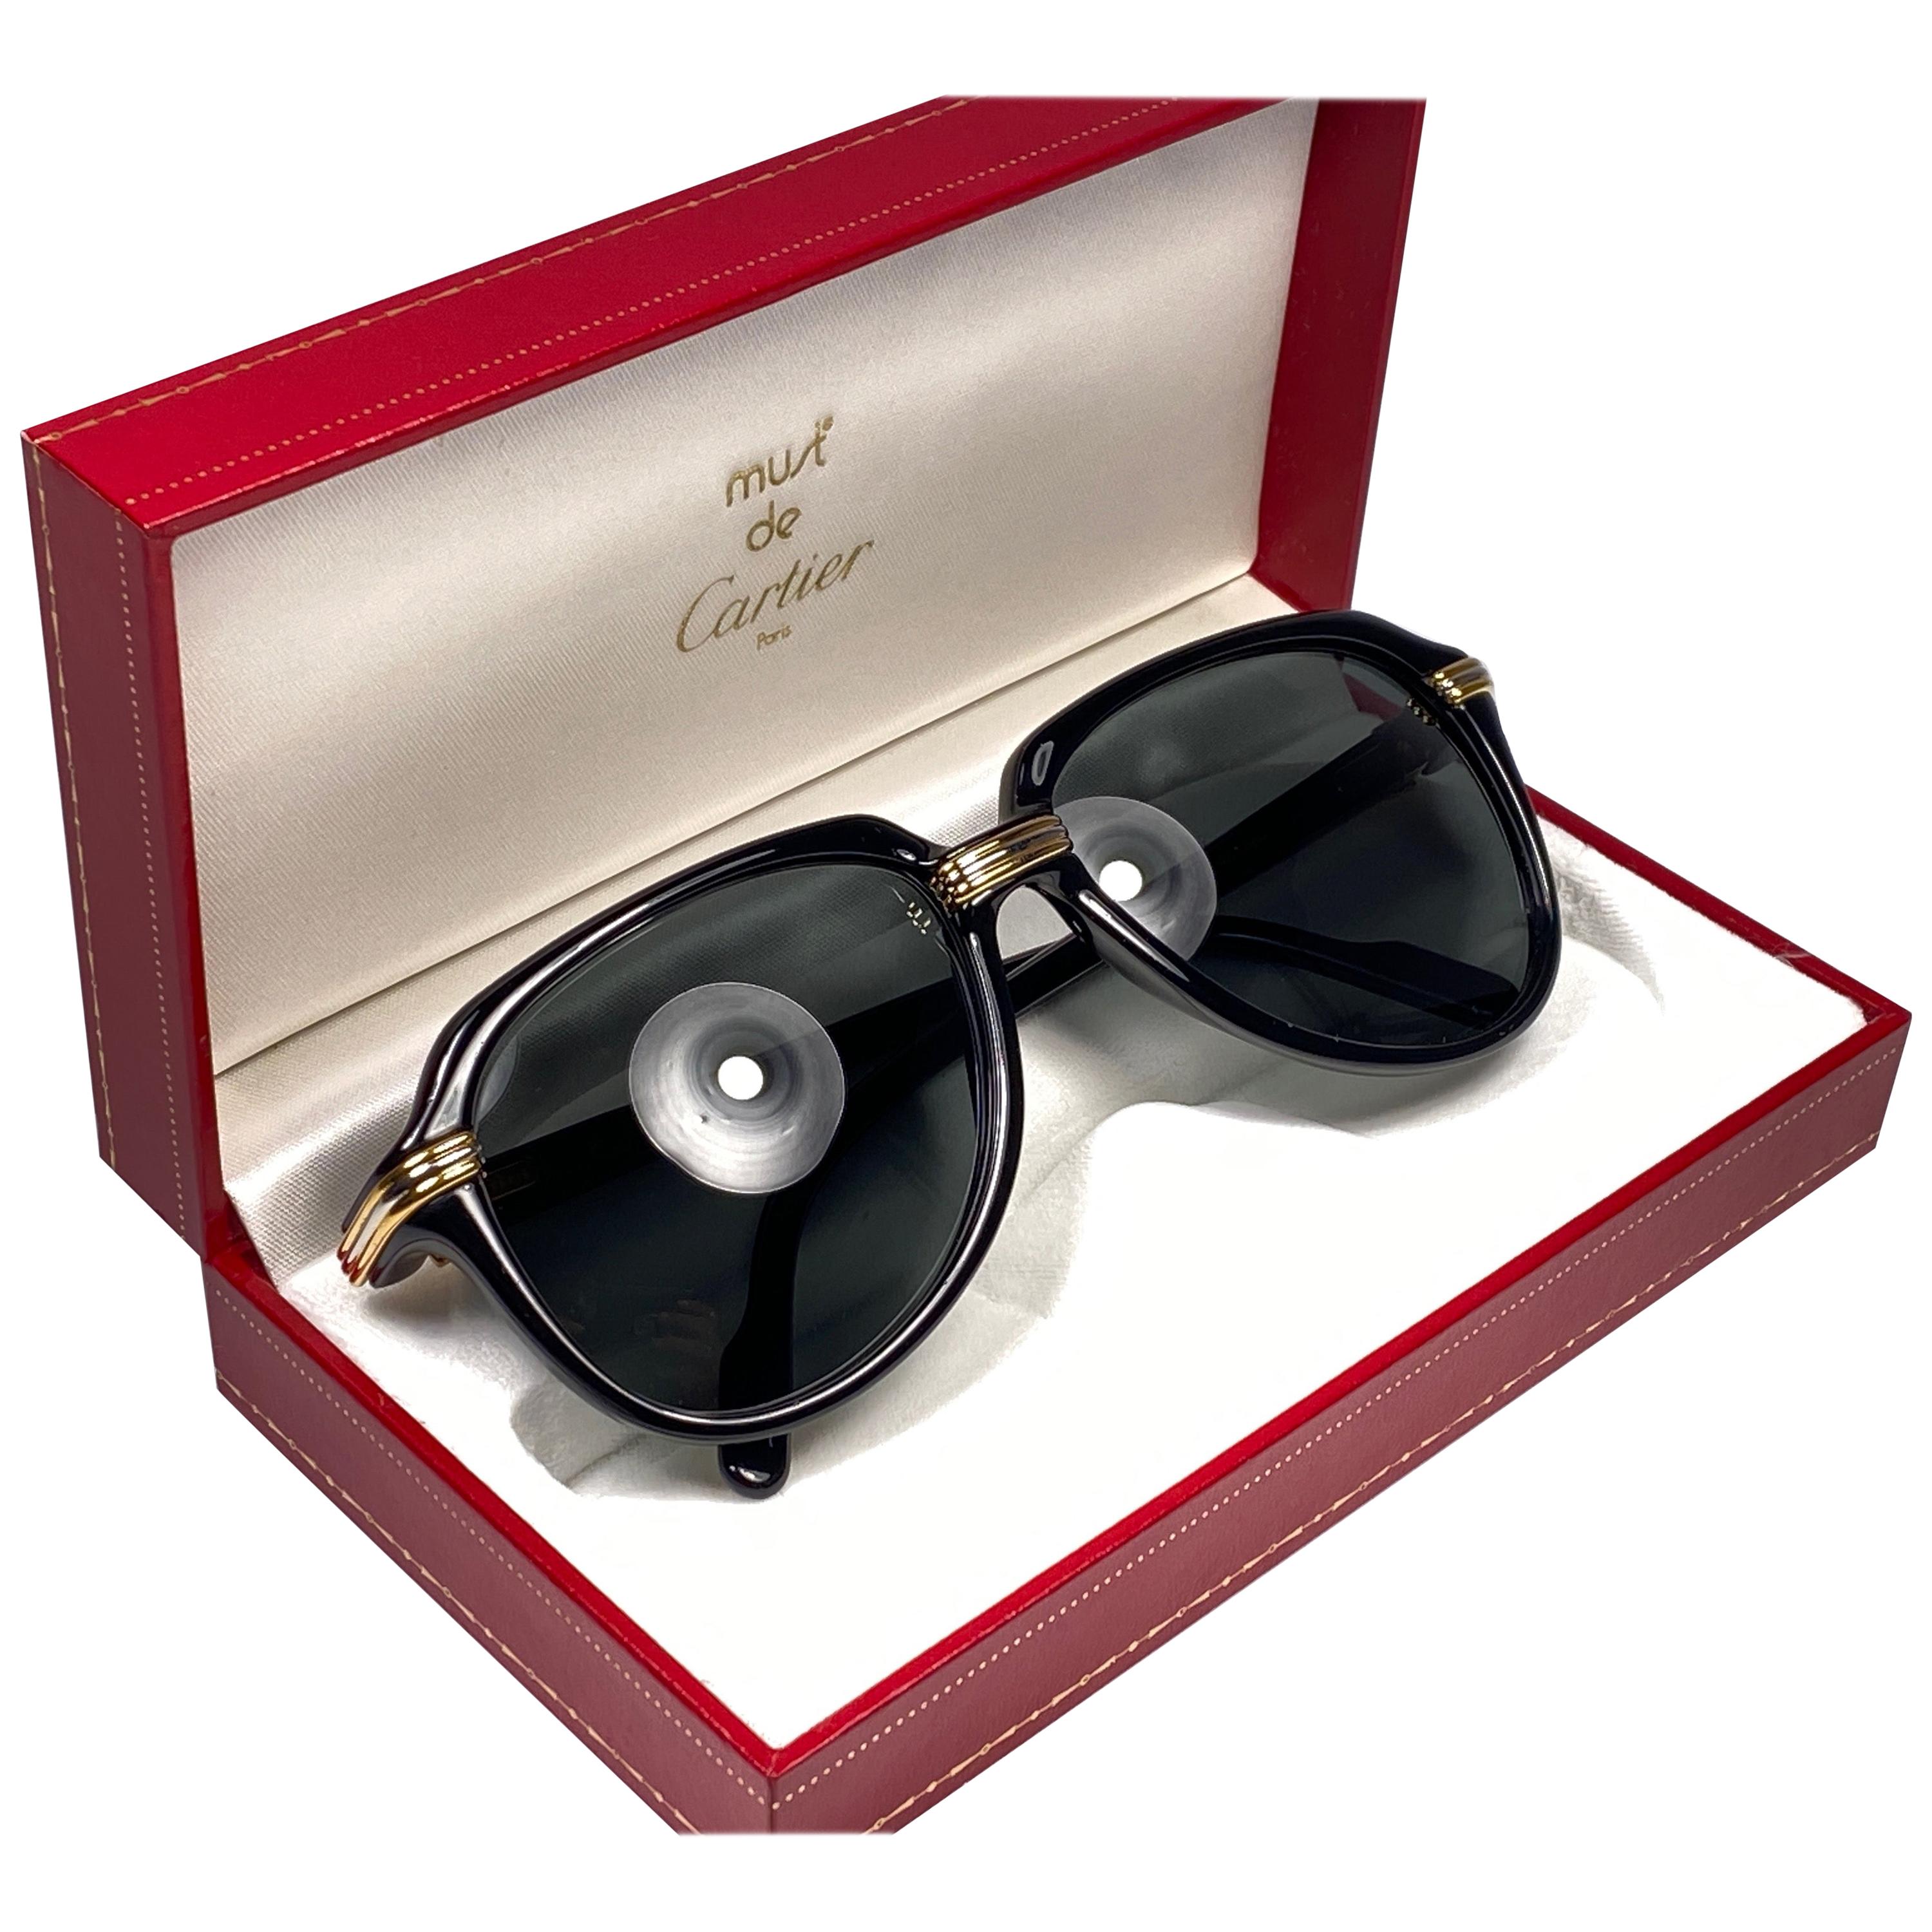 Neues Sammlerstück. Einzigartige und originelle Cartier Aviator Vitesse Sonnenbrille, die schwarze Edition mit Akzenten aus Gelb- und Weißgold. Die Gläser sind makellos mittelgrau.
Der Rahmen ist an den Seiten in Gold. Alle Markenzeichen.